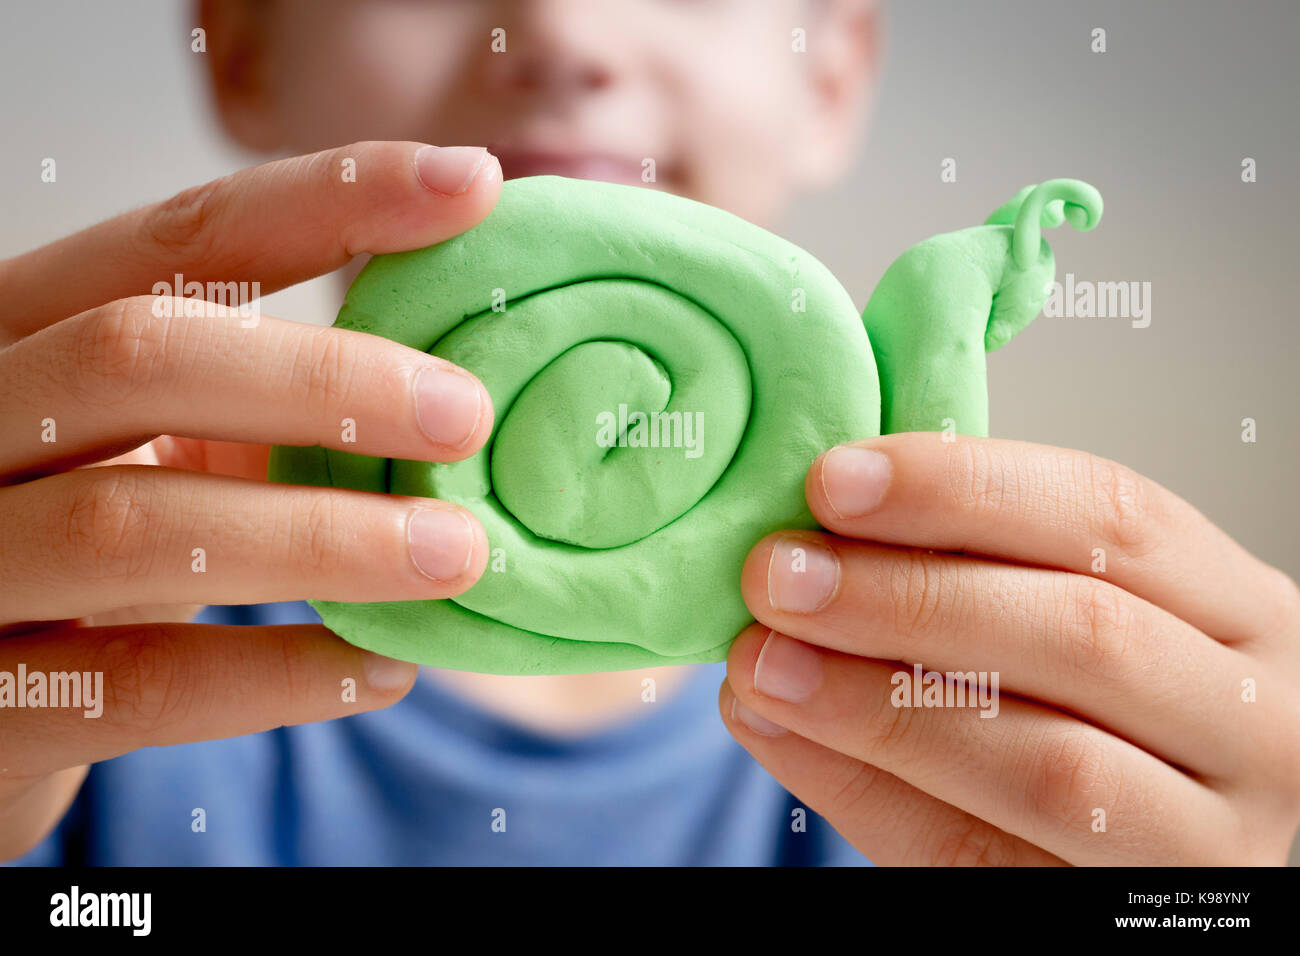 Making plasticine figures Stock Photo - Alamy